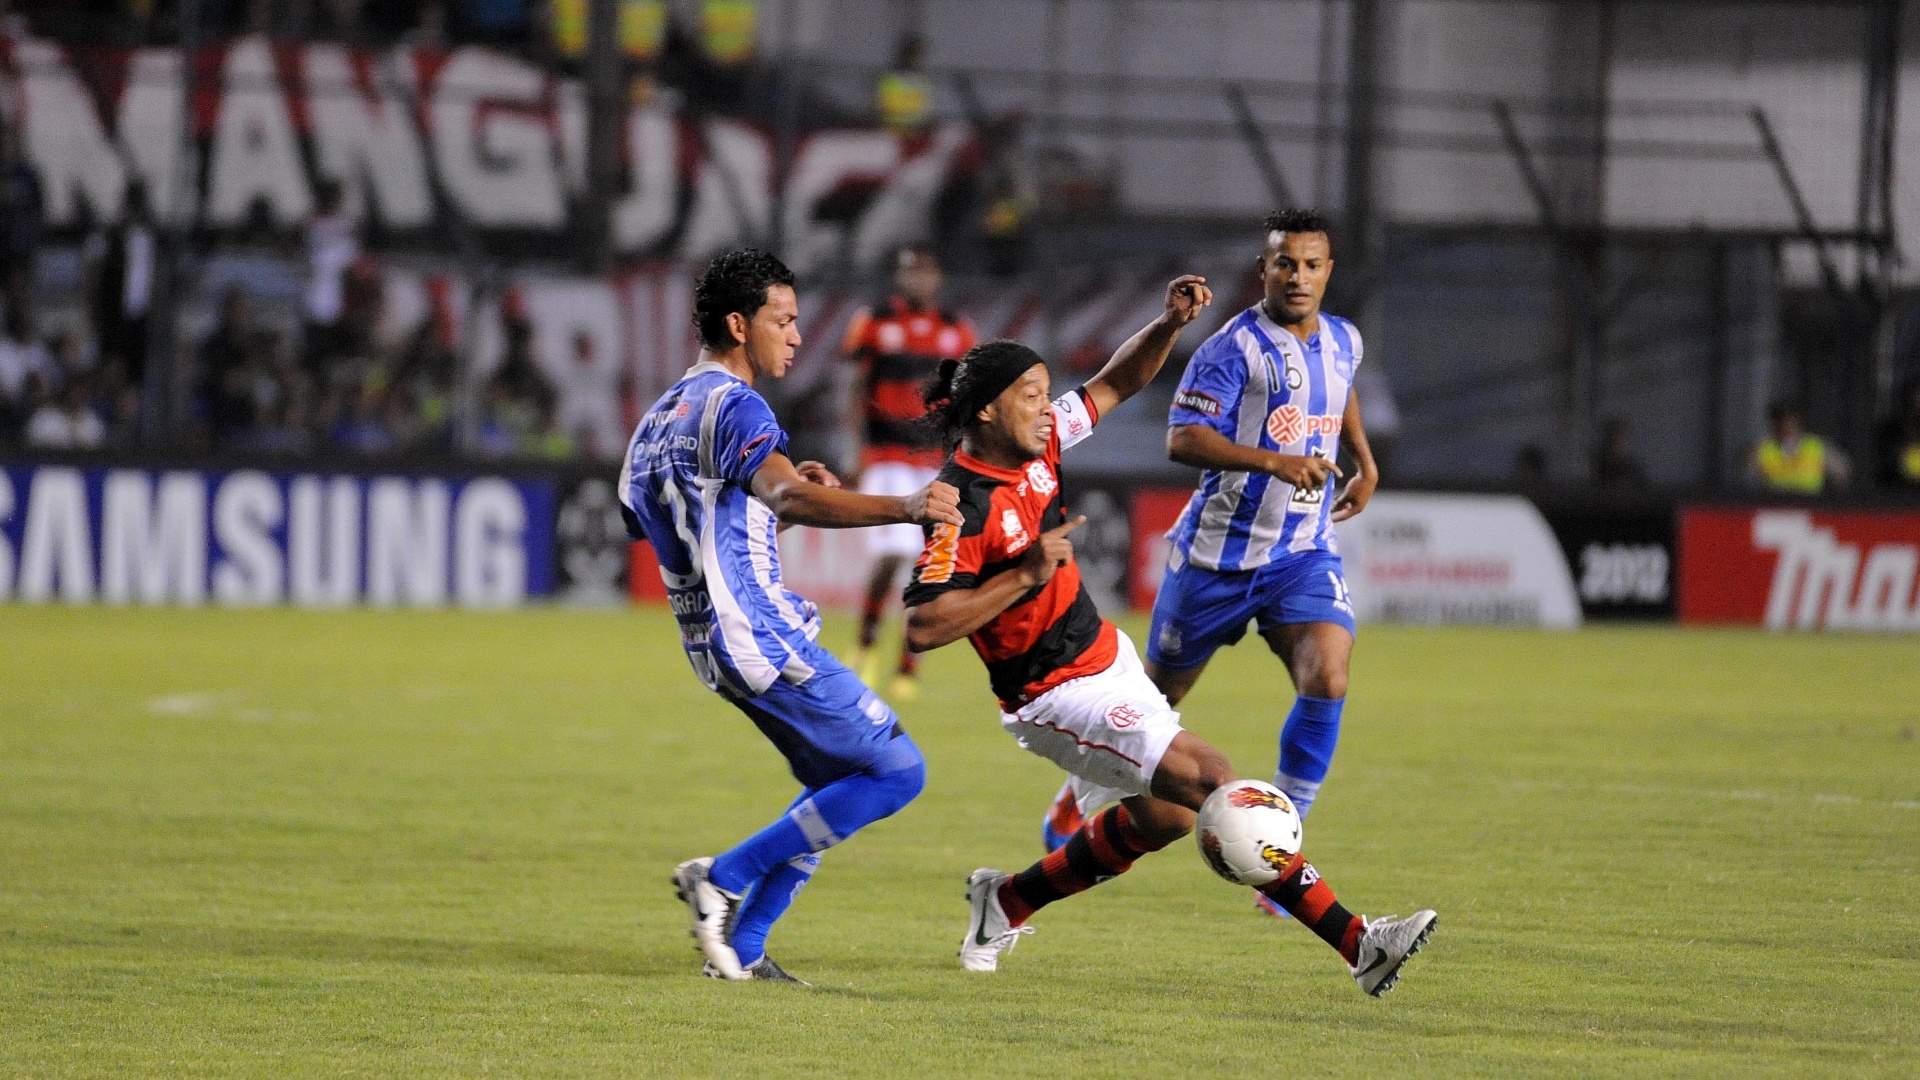 Ronaldinho Gaúcho tenta escapar da marcação no jogo entre Emelec e Flamengo (04/04/12)